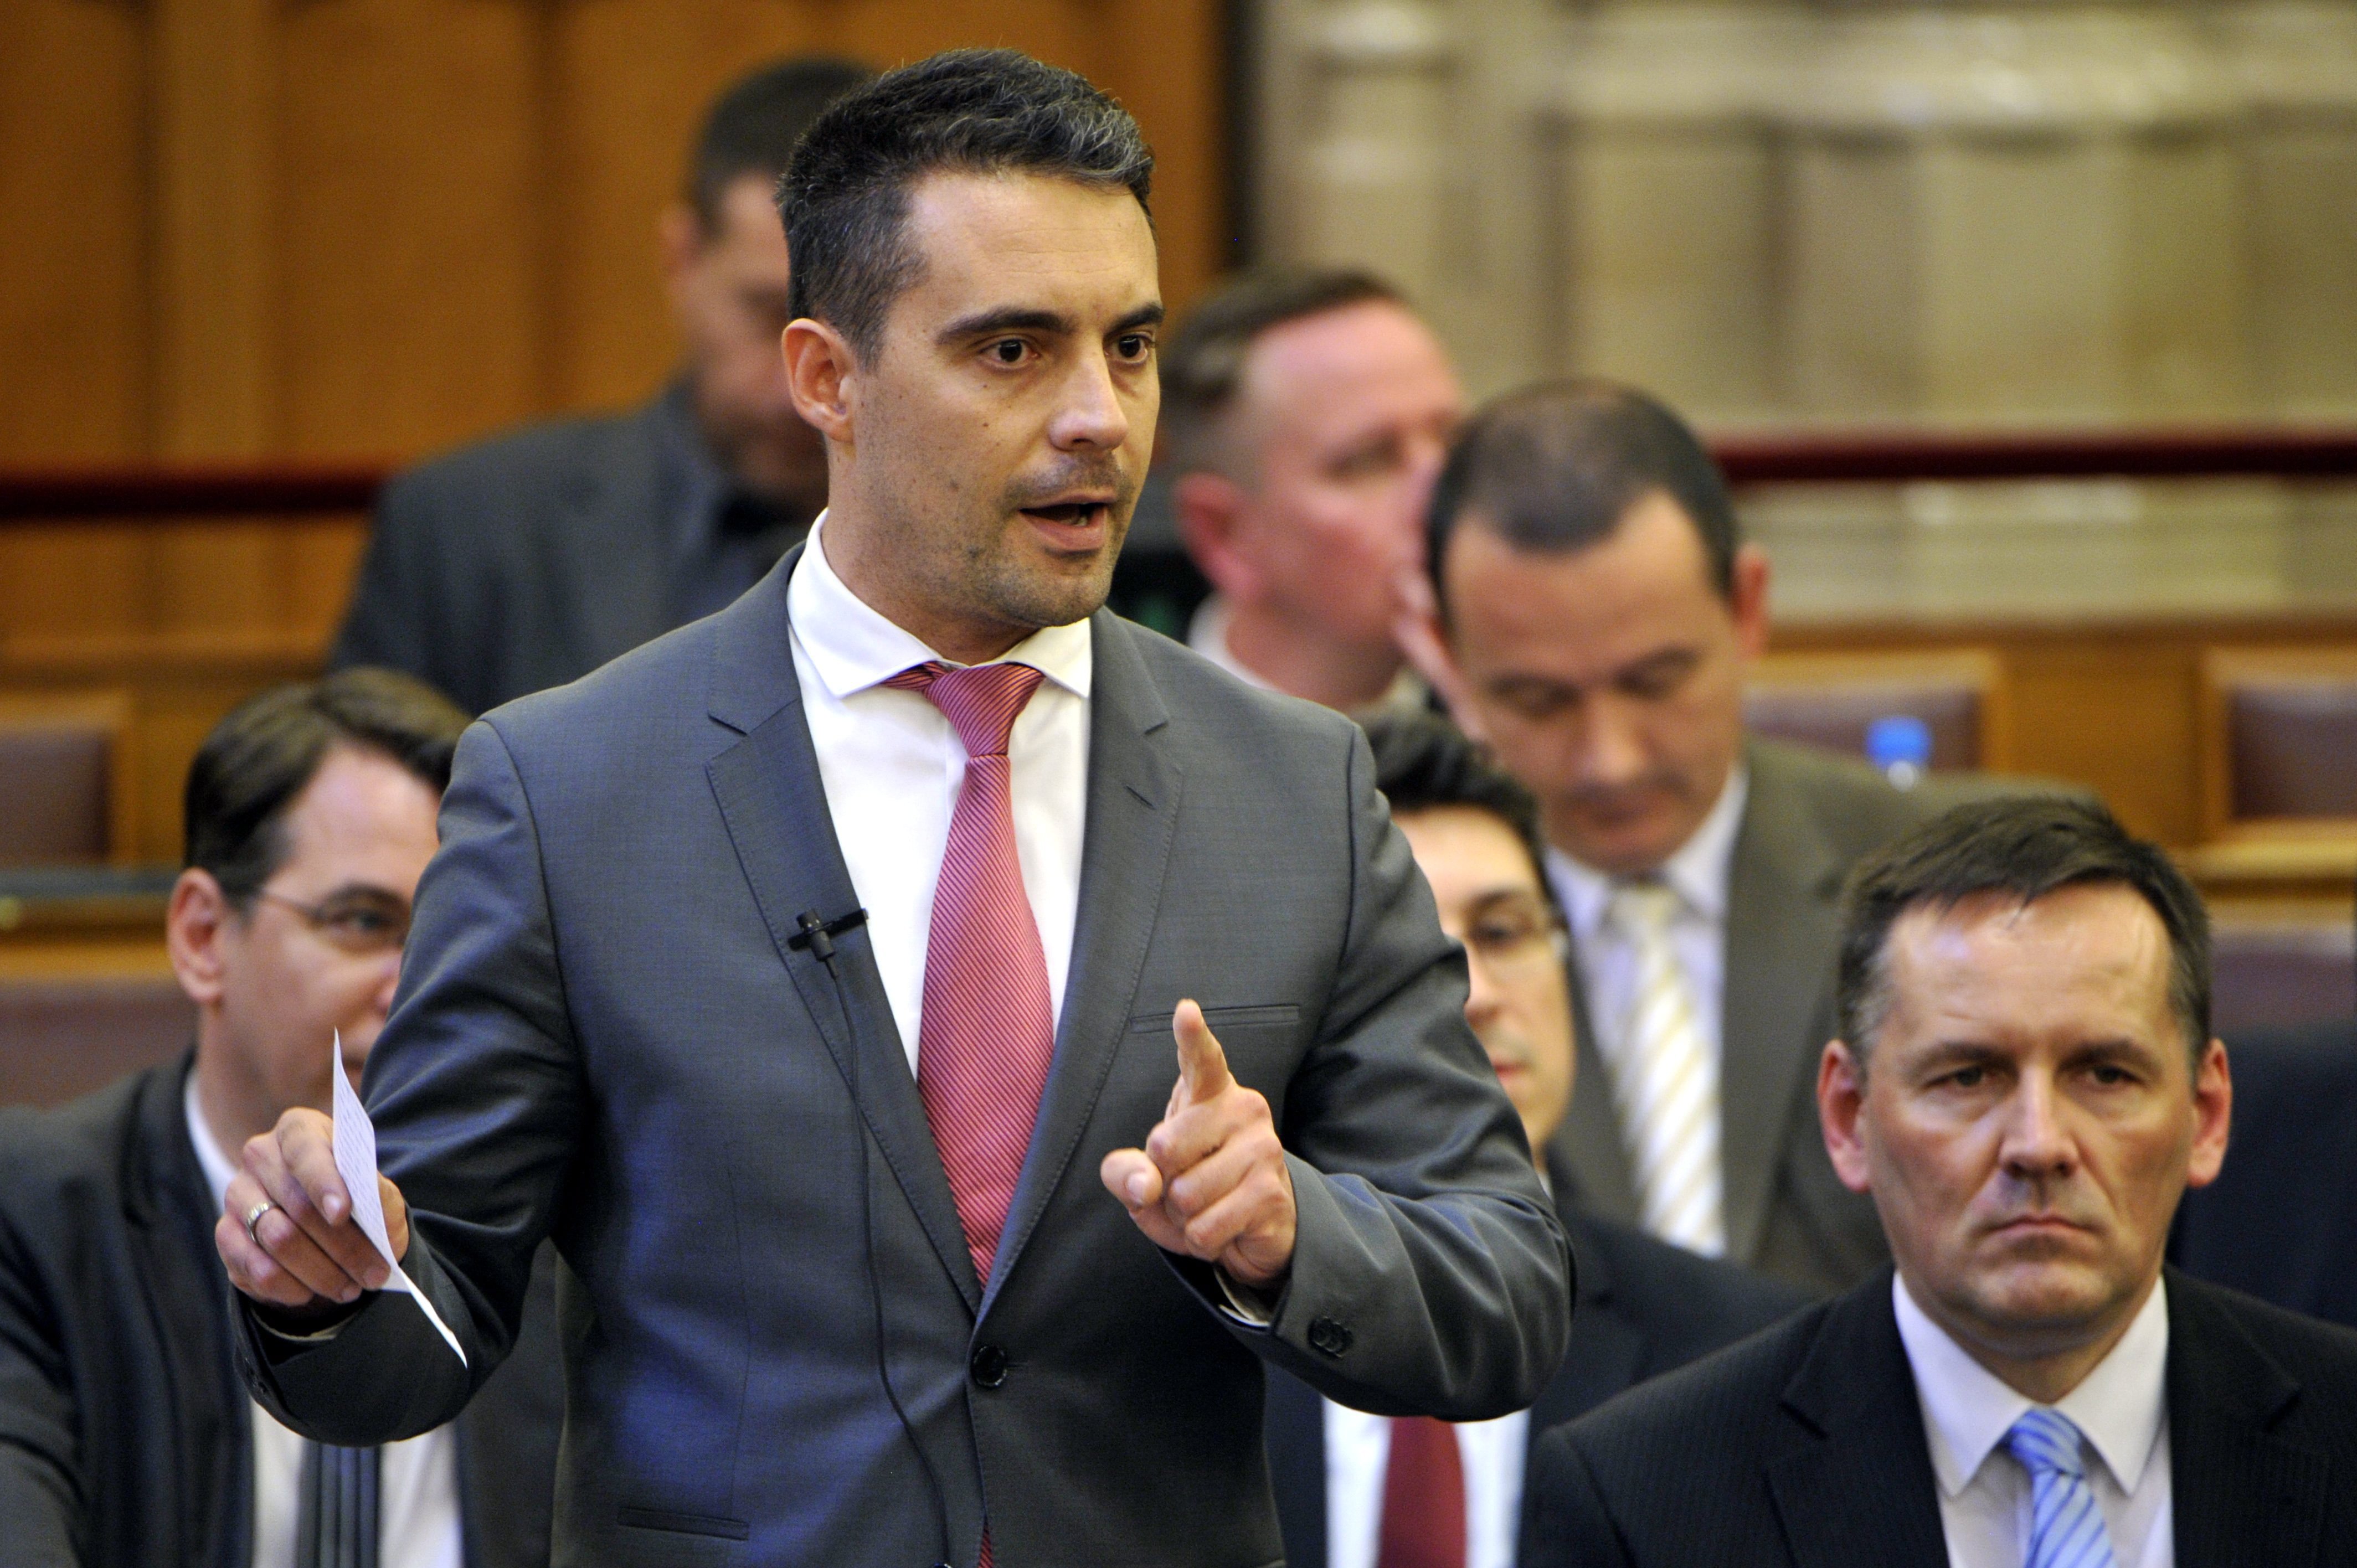 Jövő kedden rendkívüli ülés lesz a parlamentben: a Jobbik számonkéri a Fideszen a 2300 befogadott menekültet